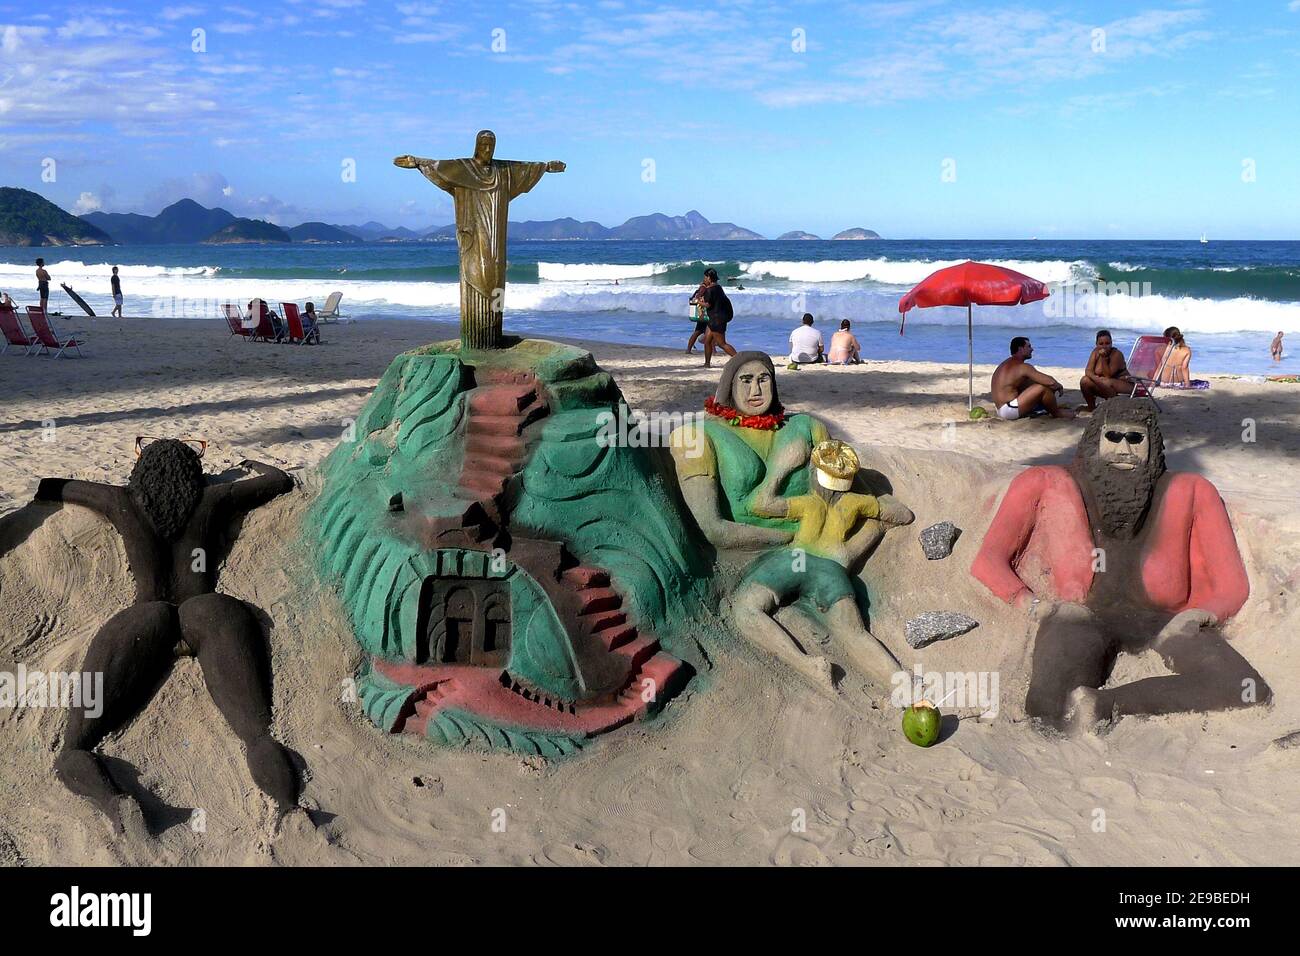 Castelli di sabbia splendidamente artigianali sulla spiaggia di Copacabana a Rio de Janeiro in Brasile. Molti locali costruiscono una varietà di castelli di sabbia lungo la spiaggia. Foto Stock